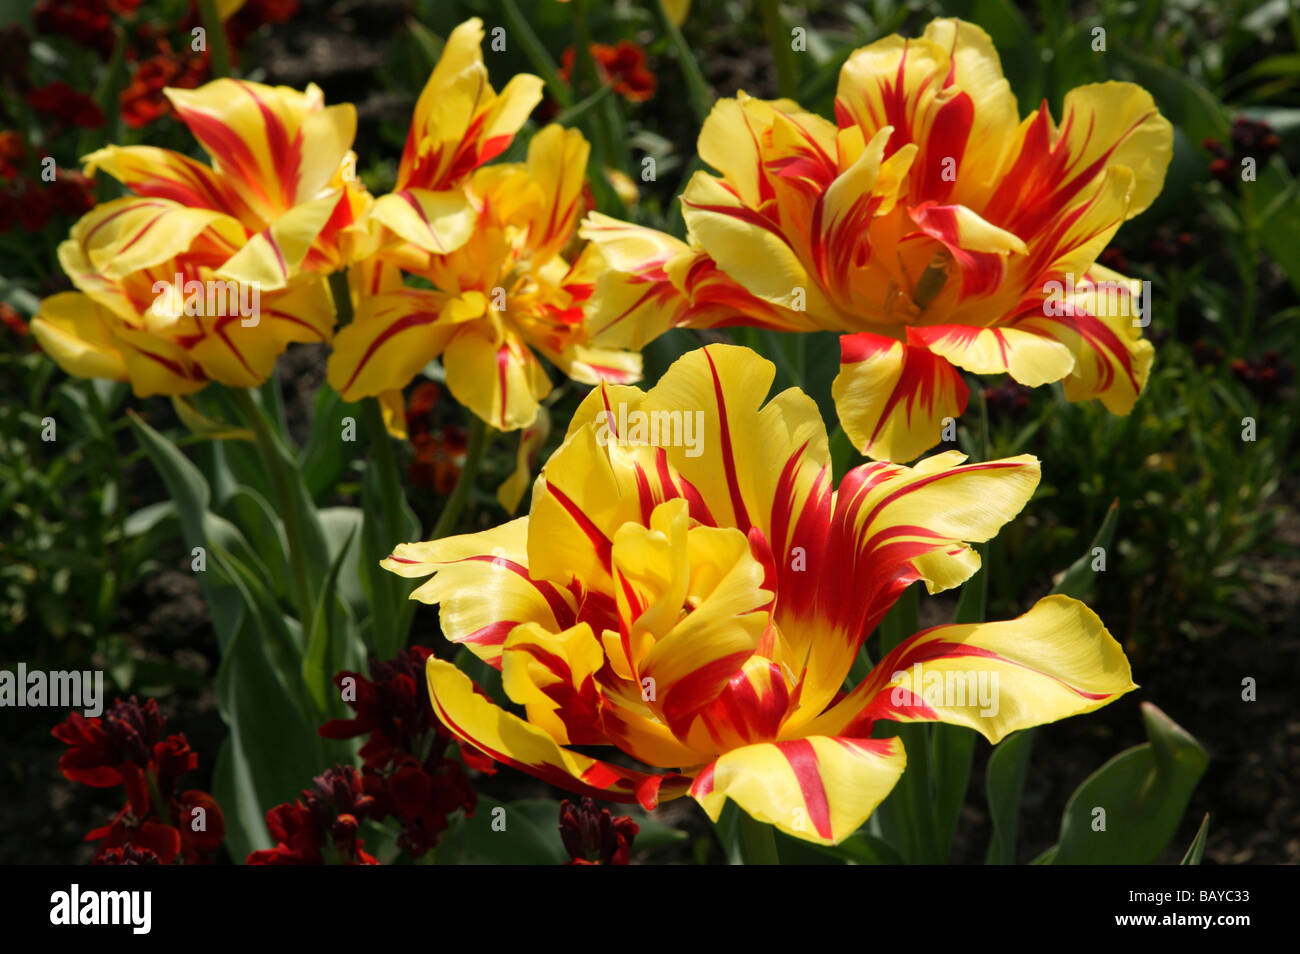 Gros plan de quelques tulipes rouges et jaunes de printemps, diverses, qui poussent dans les jardins formels du parc Beckenham Palce, à Lewisham Banque D'Images